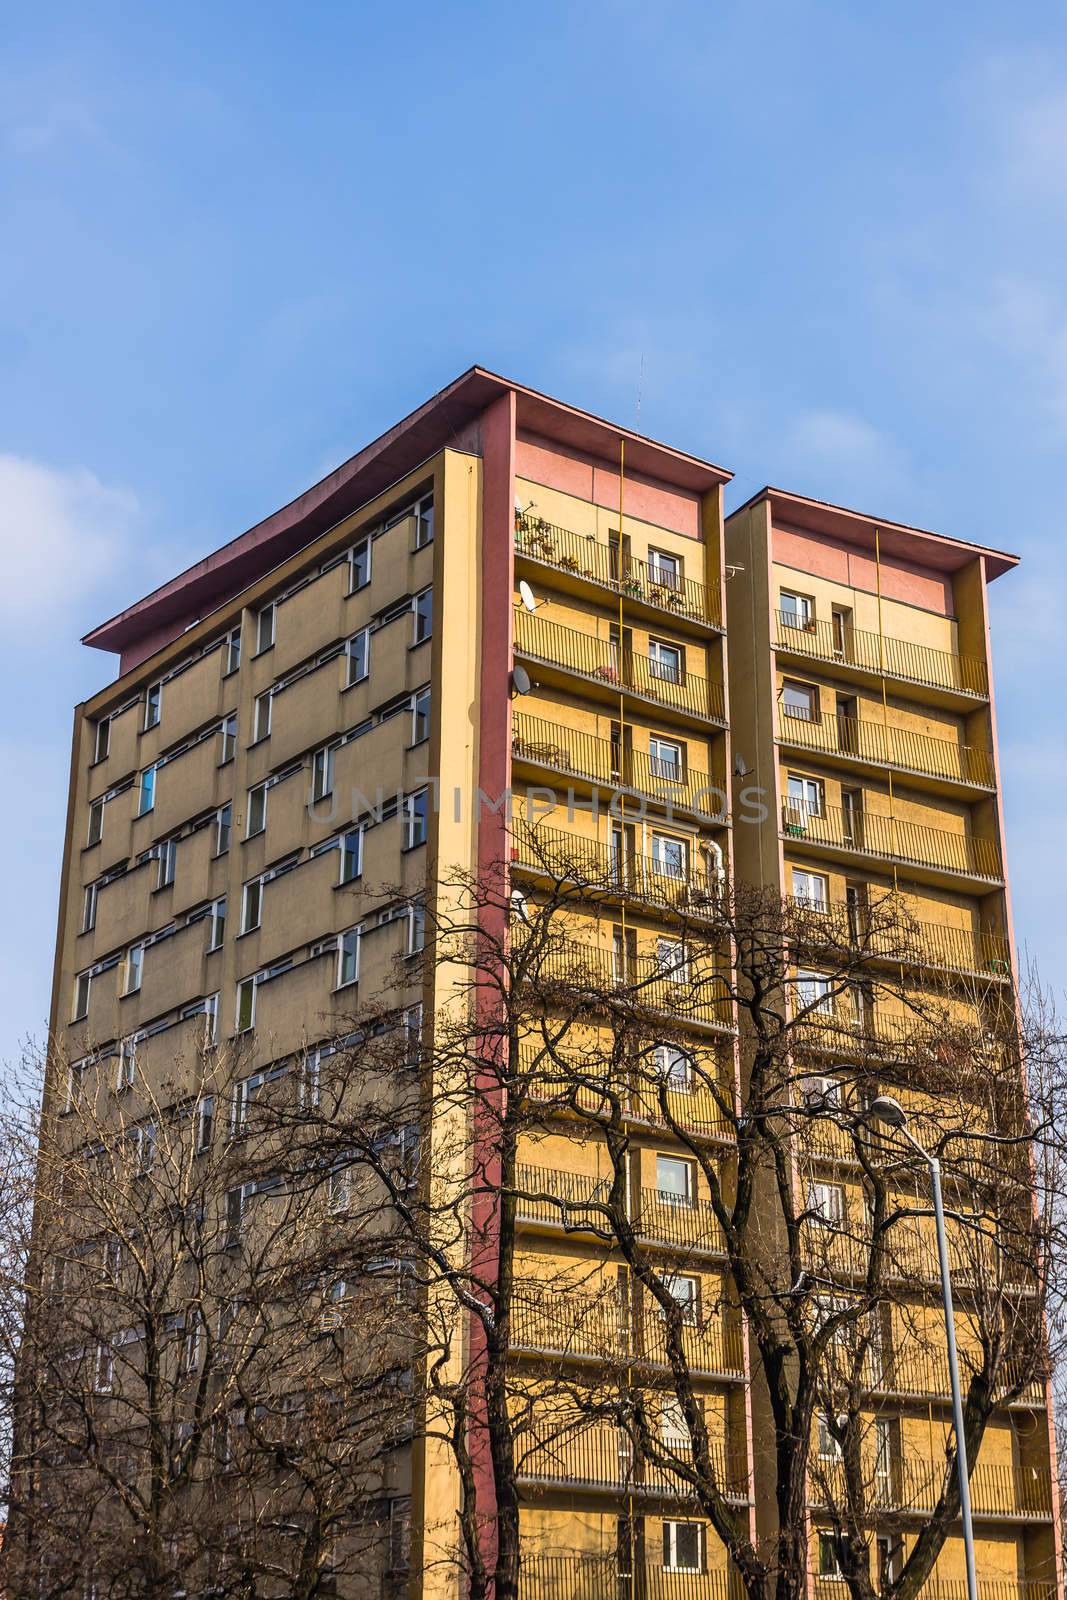 Ordinary residential block by pawel_szczepanski